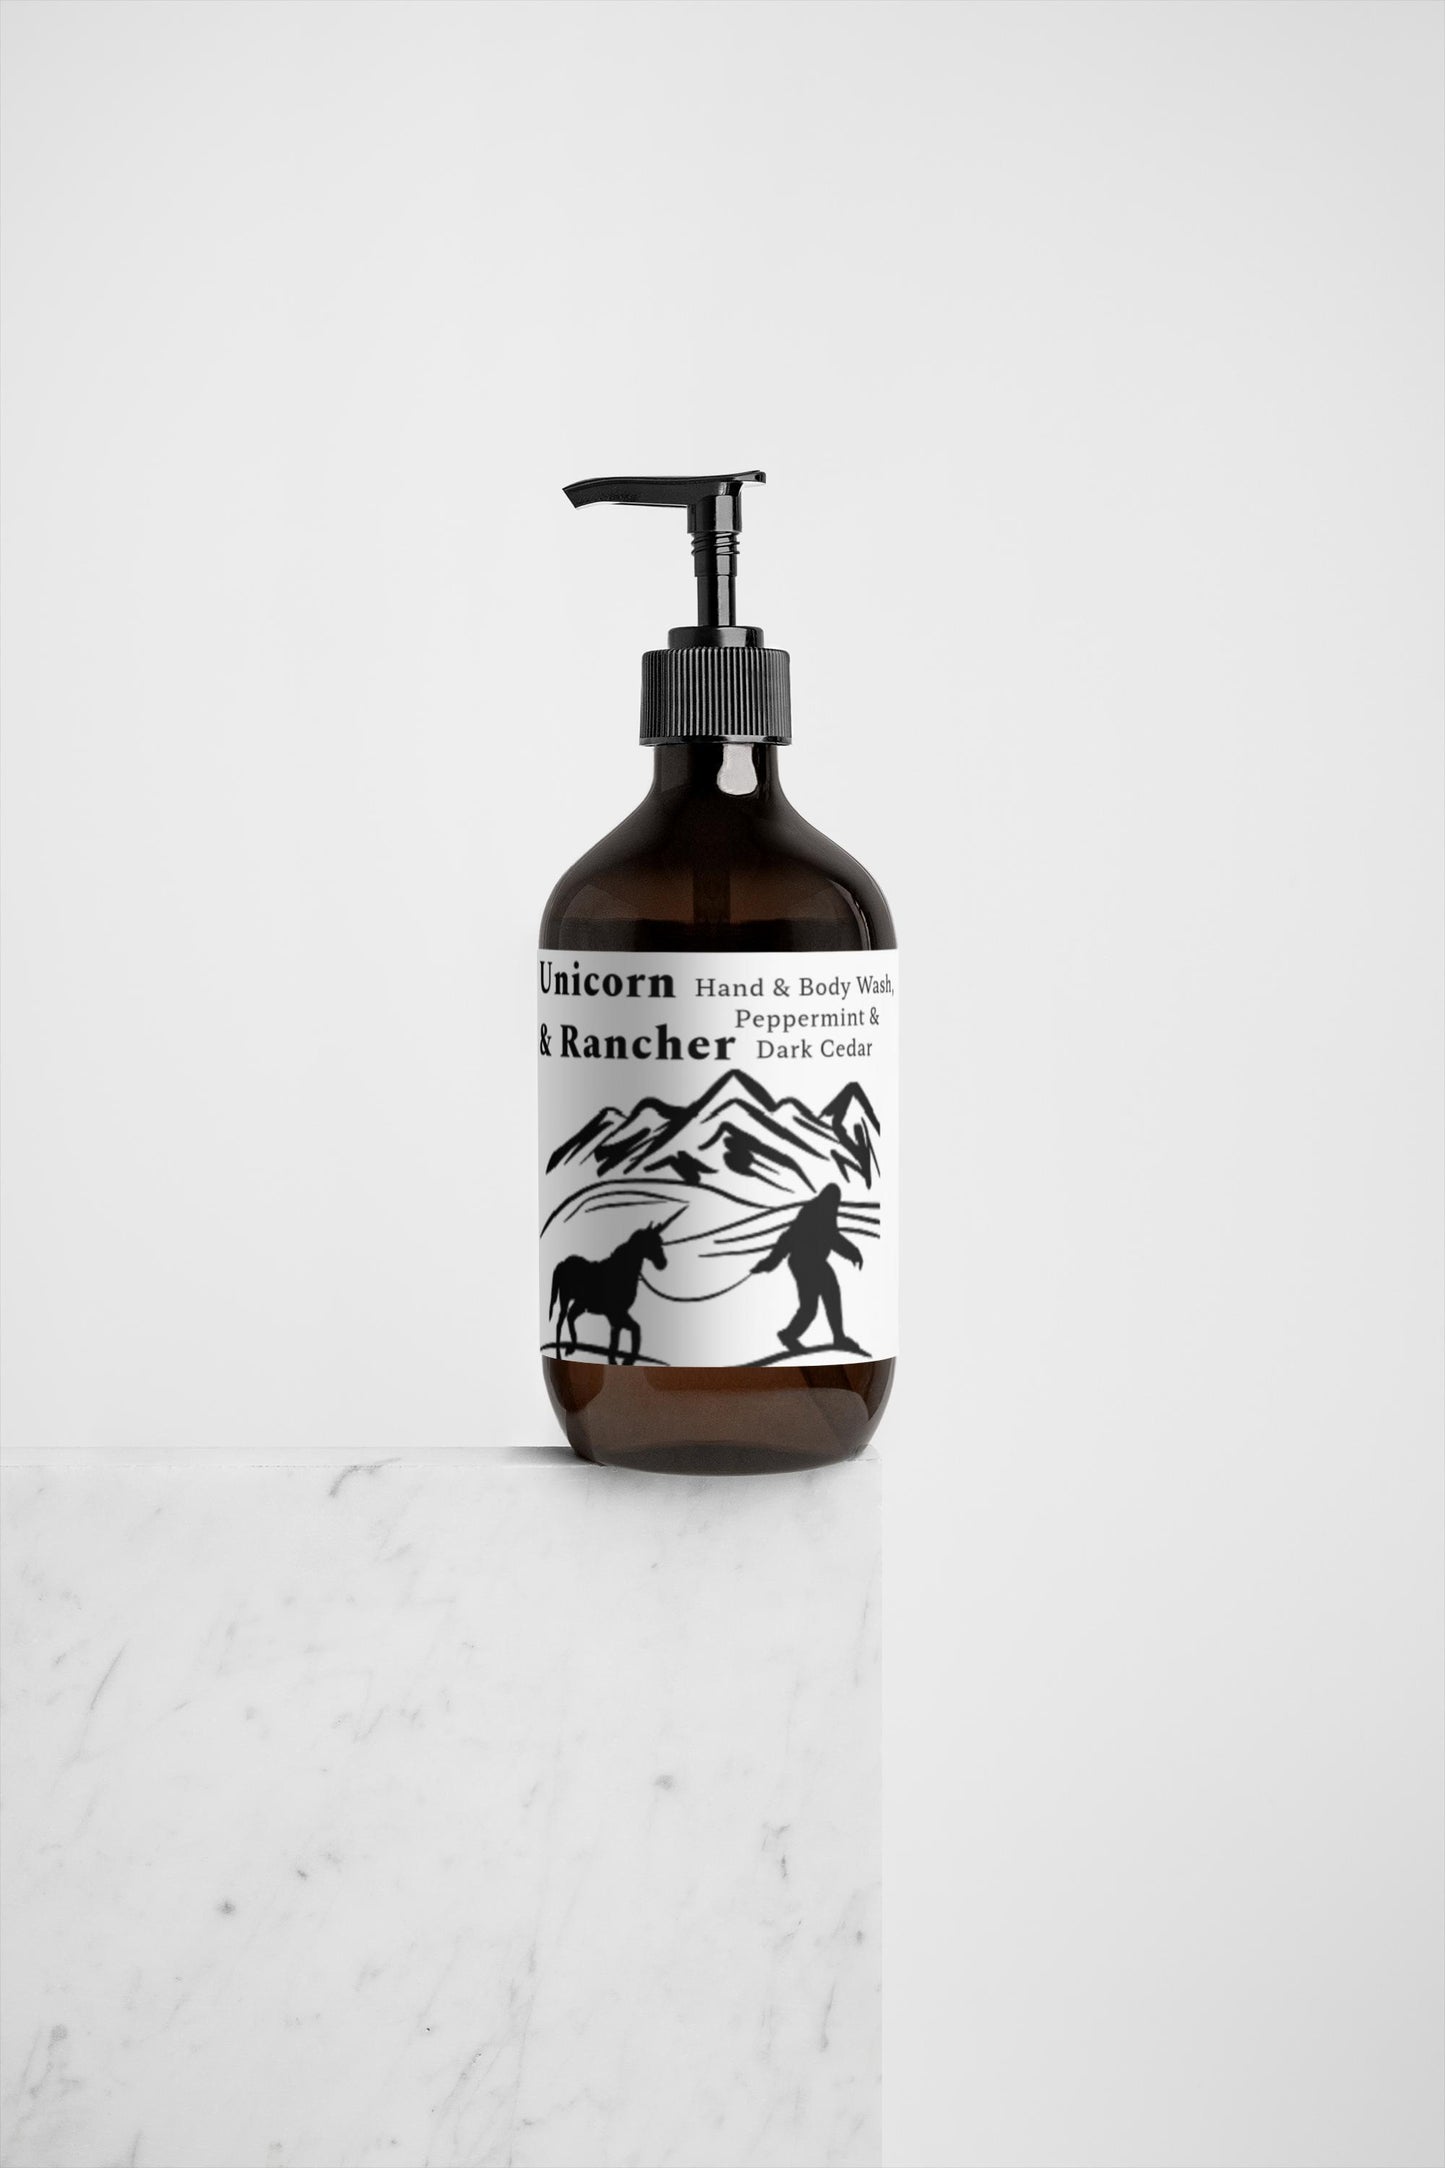 Unicorn and Rancher Hand & Body Wash, Peppermint & Dark Cedar